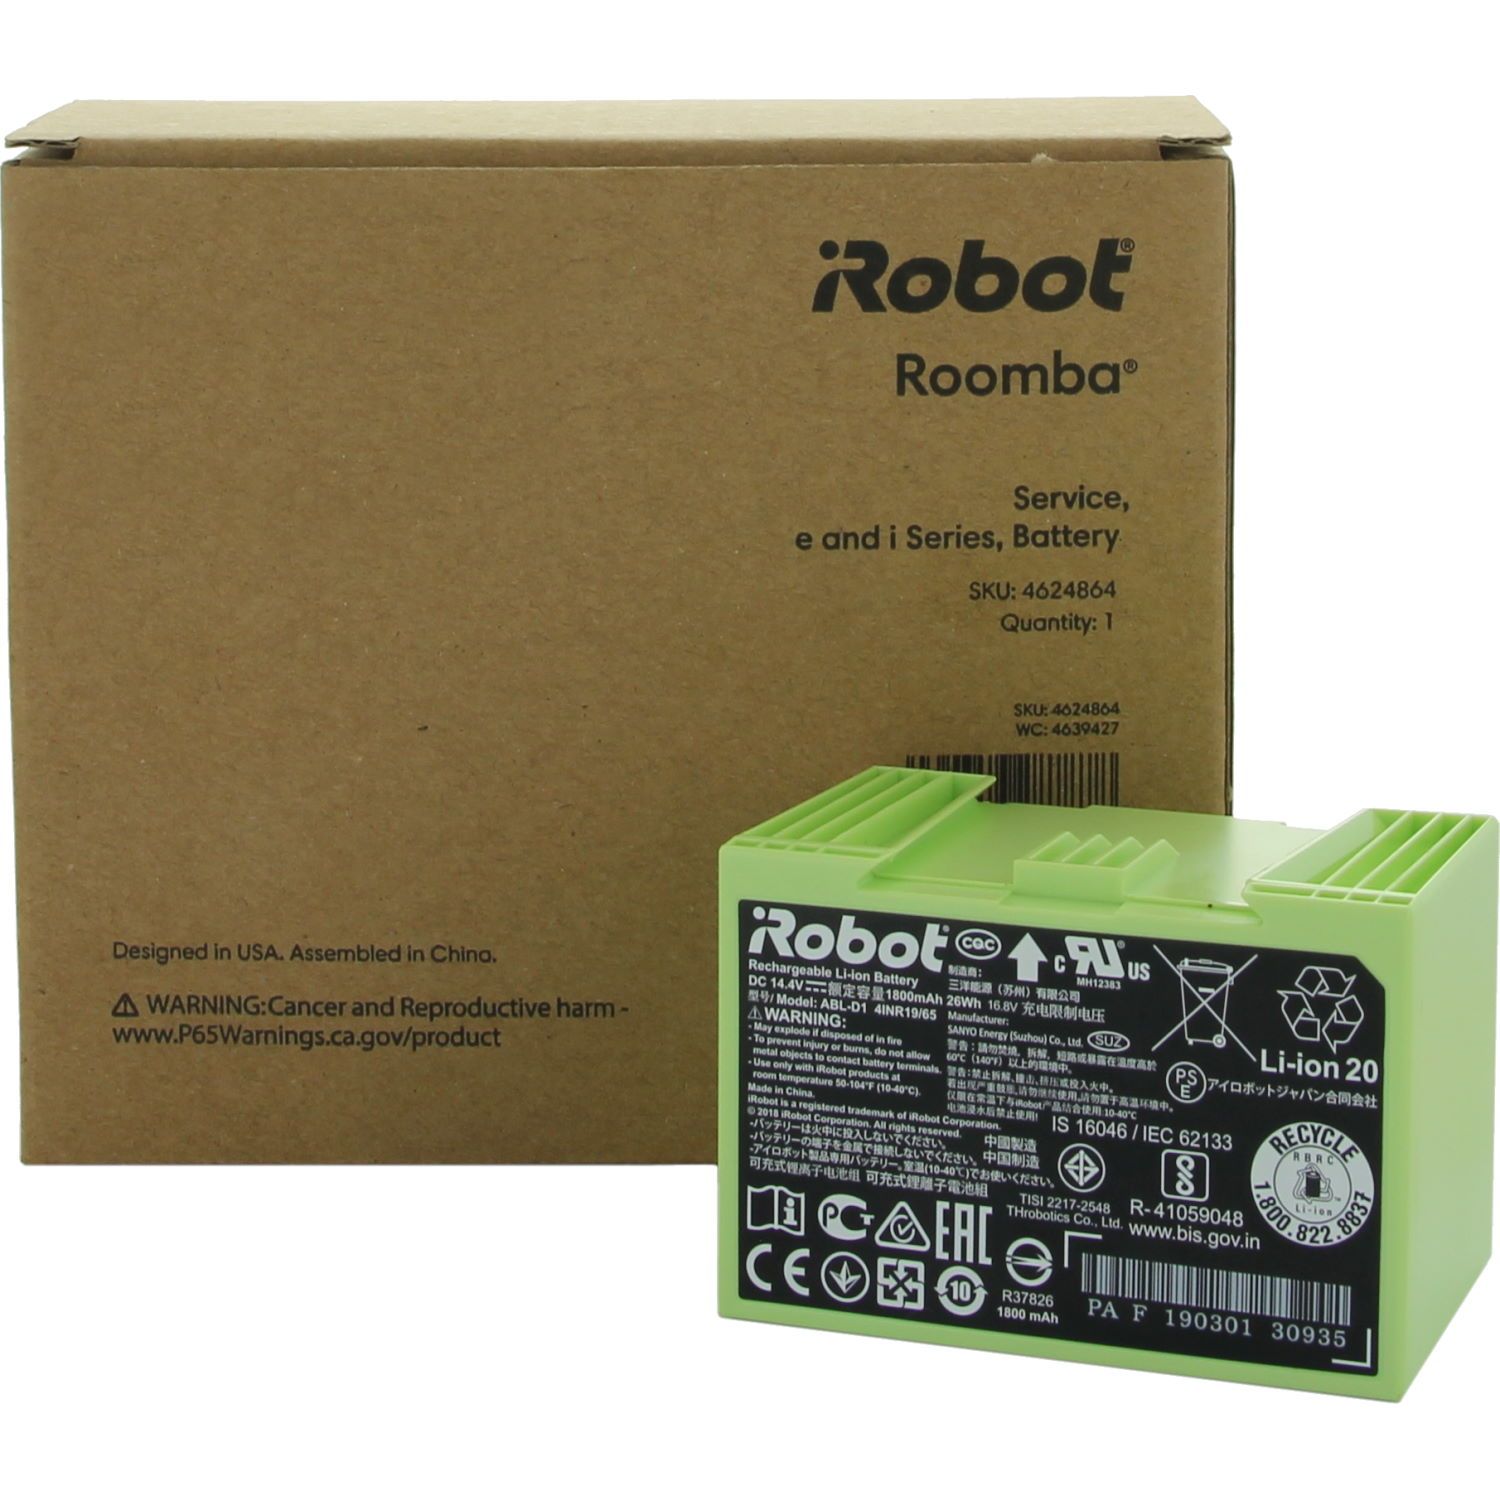 Batería original iRobot Roomba Lithium 1800mAh